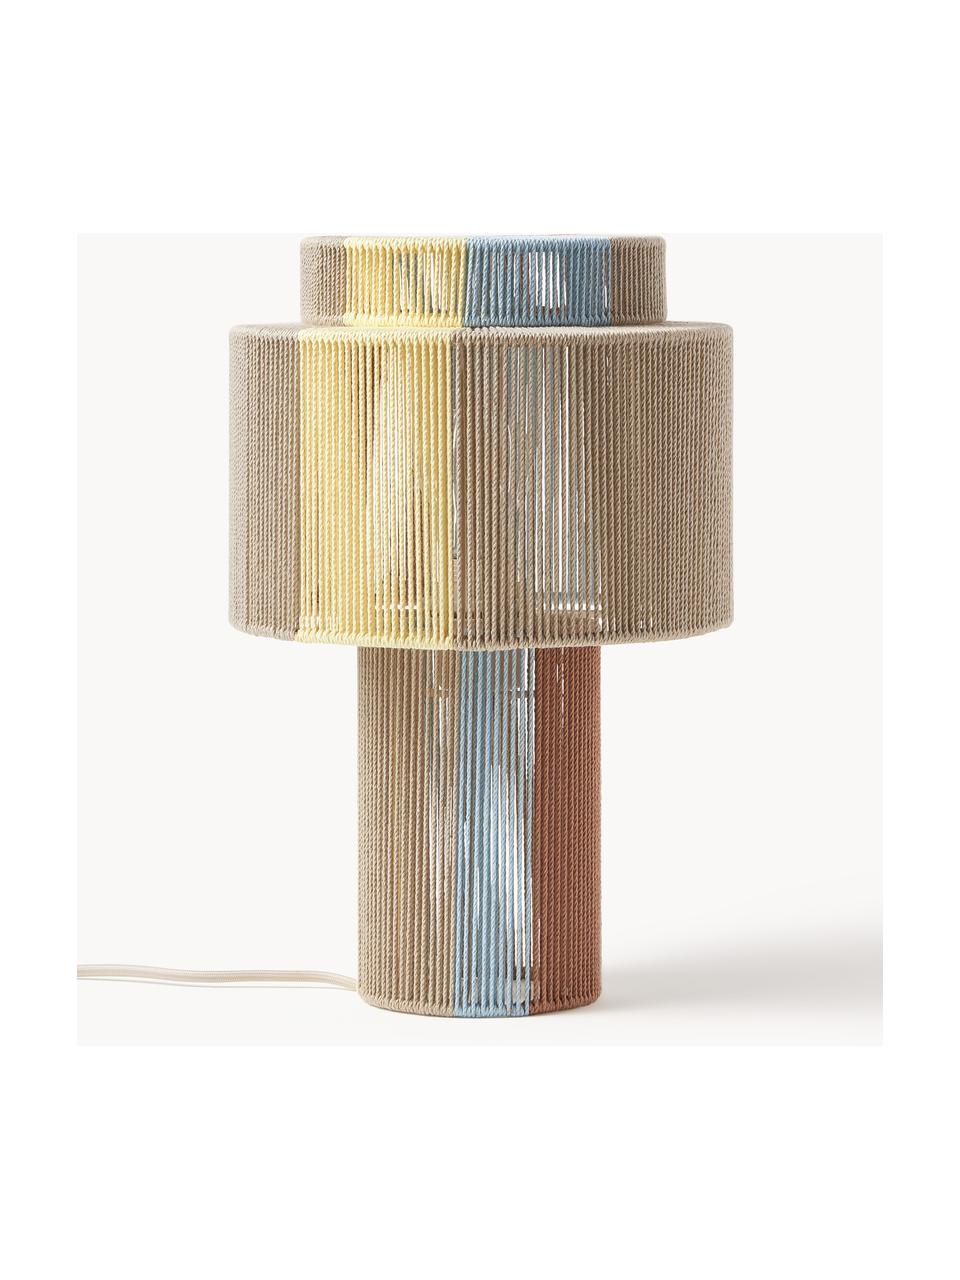 Tischlampe Lace aus Leinenfäden, Naturfaser, Mehrfarbig, Ø 25 x H 38 cm